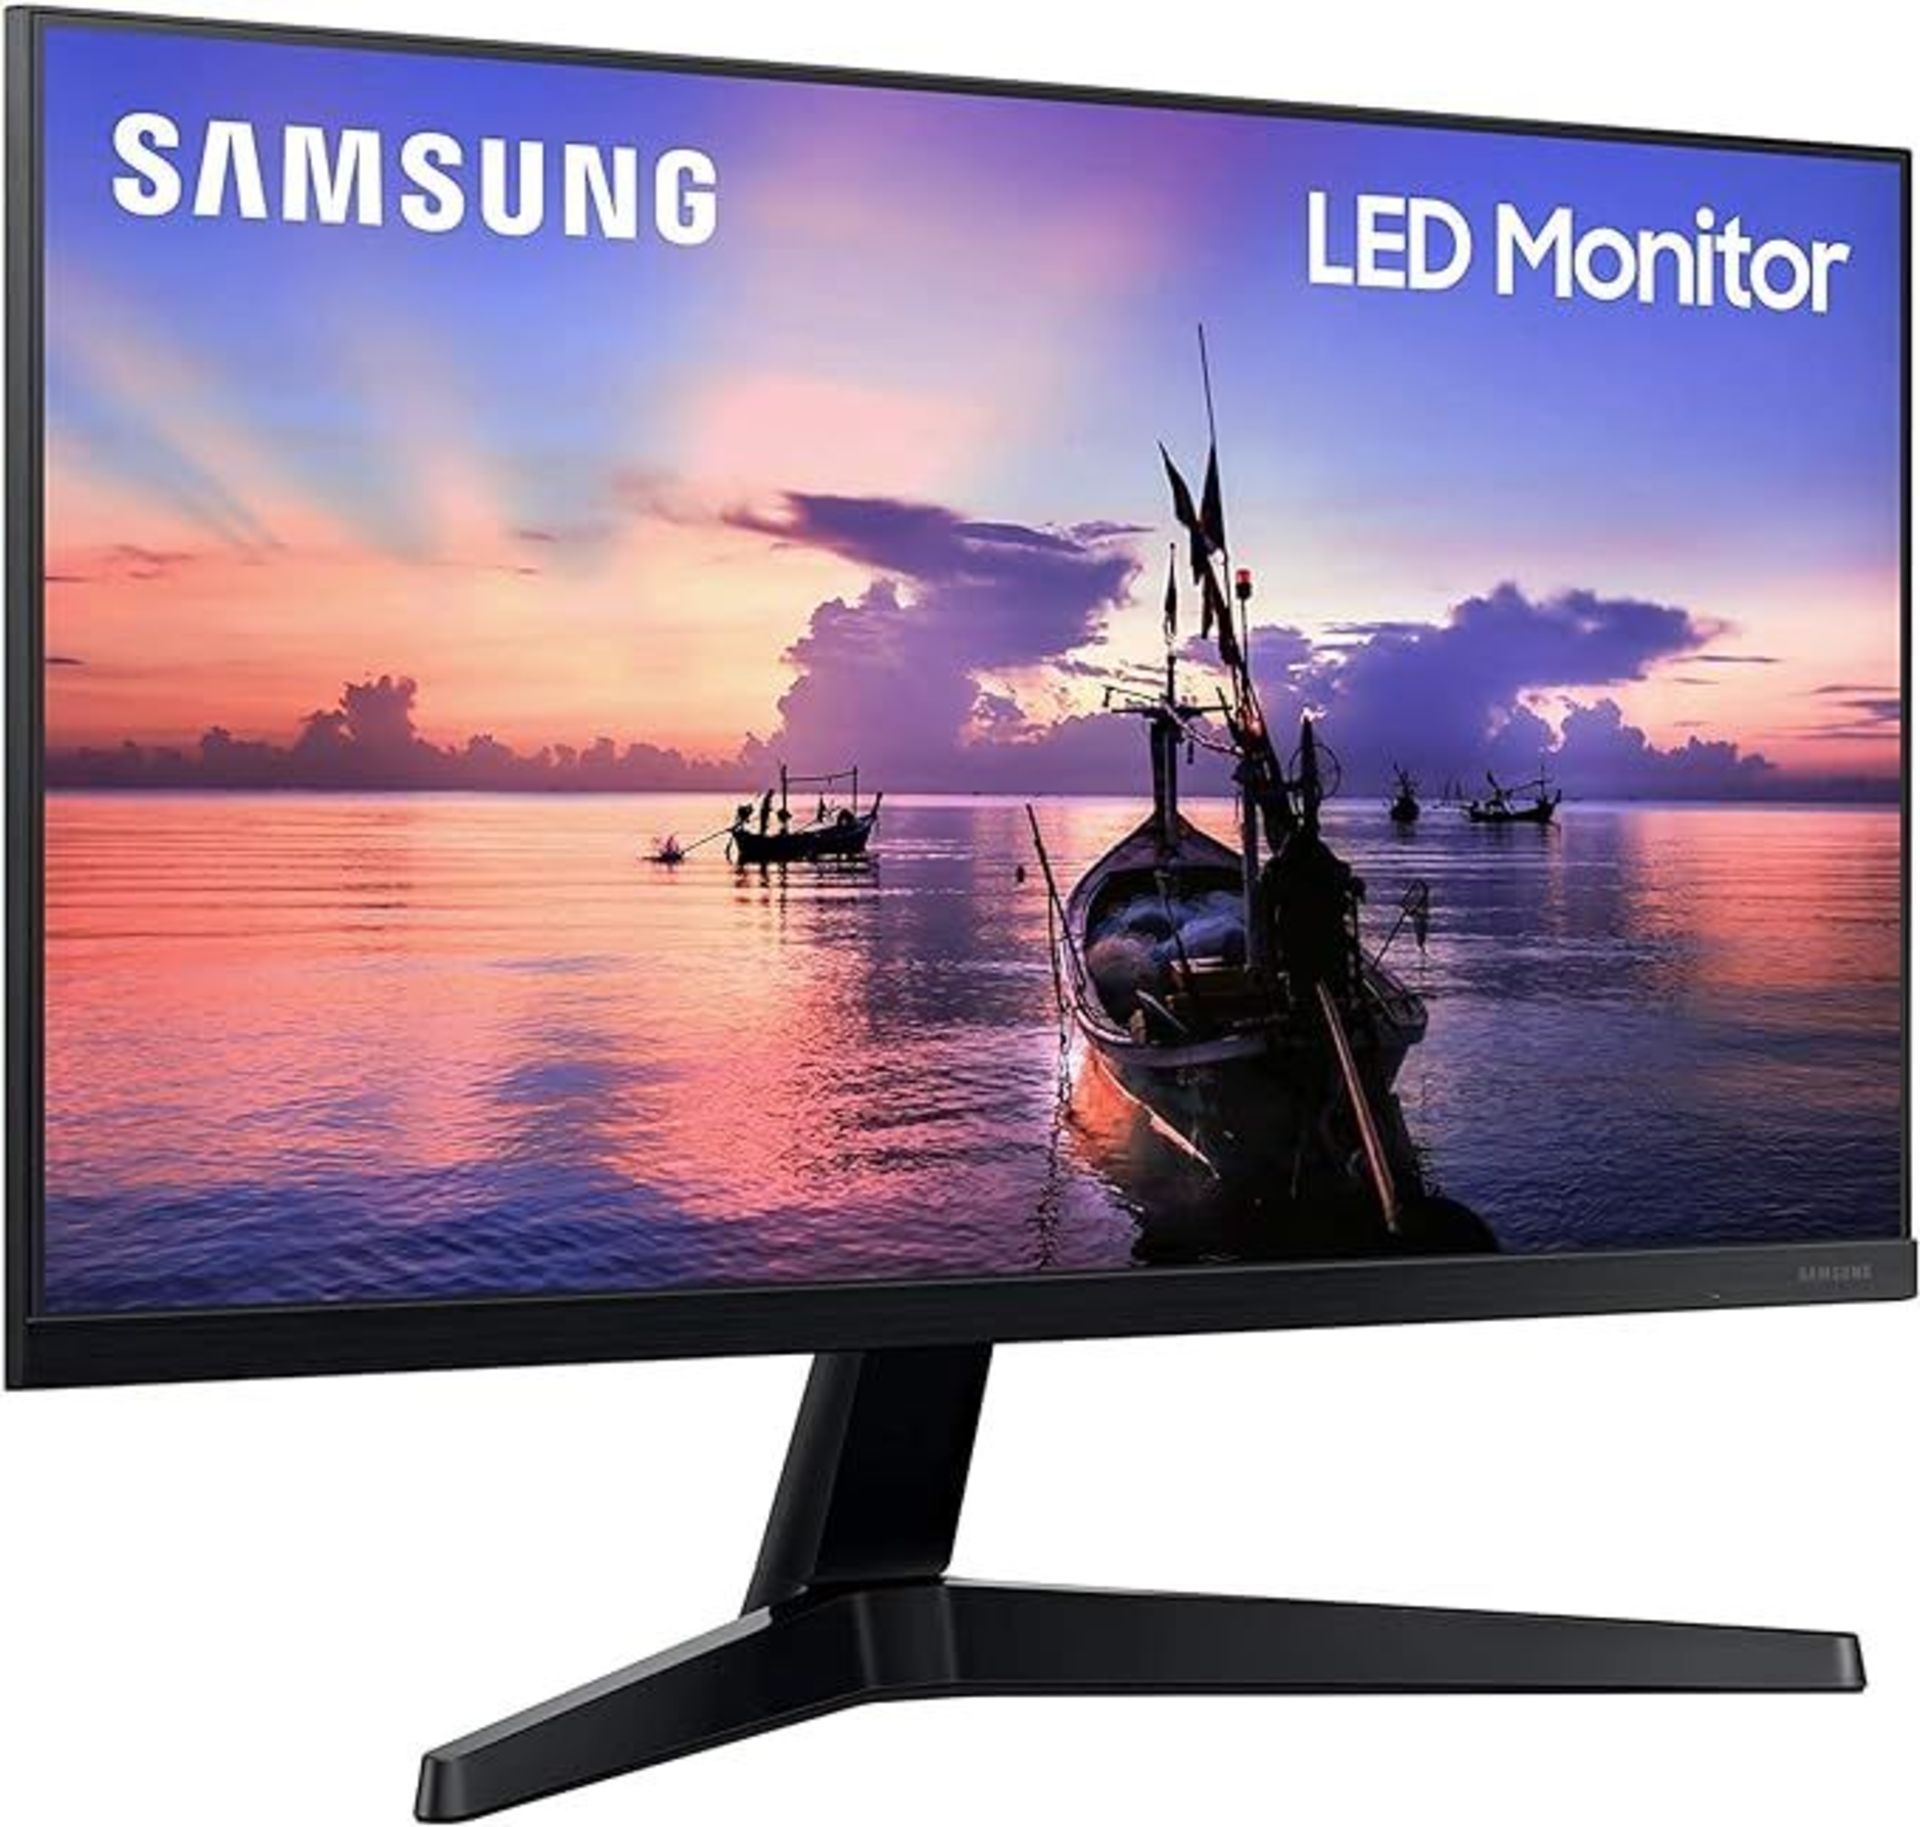 Samsung F22T350FHR - T35F Series - LED monitor - 22" - 1920 x 1080 Full HD (1080p)- PCKBW. RRP £